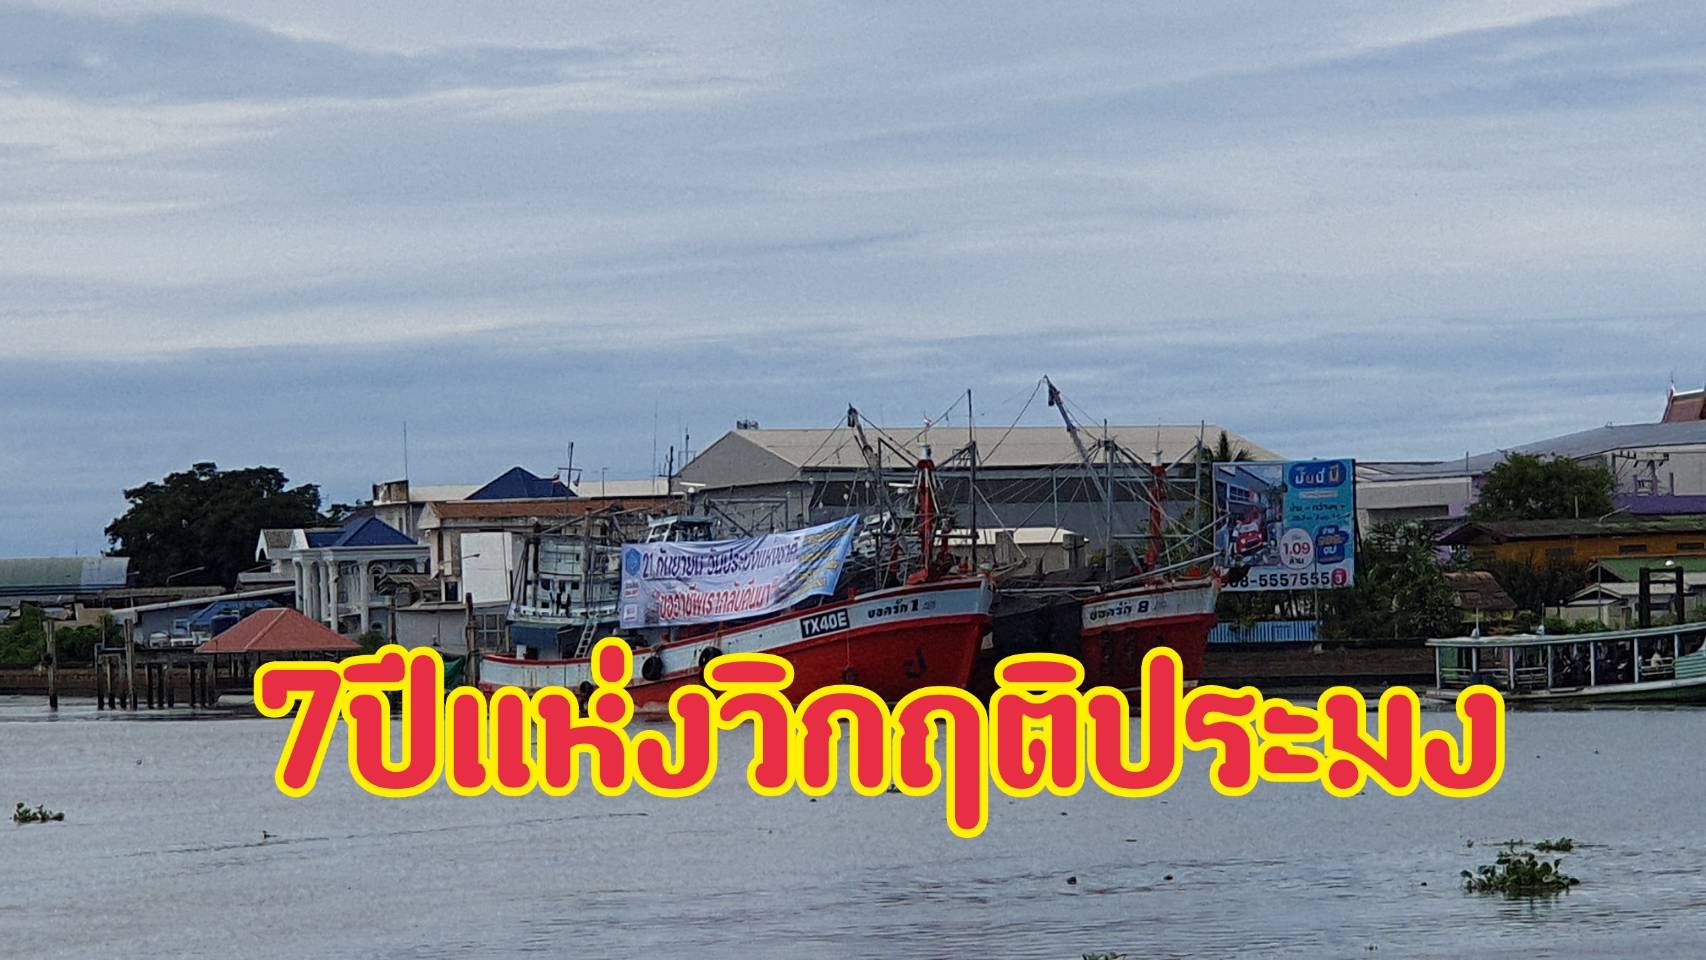 กฎเหล็กIUUกับ7ปีแห่งวิกฤติประมงไทยที่รอวันตาย